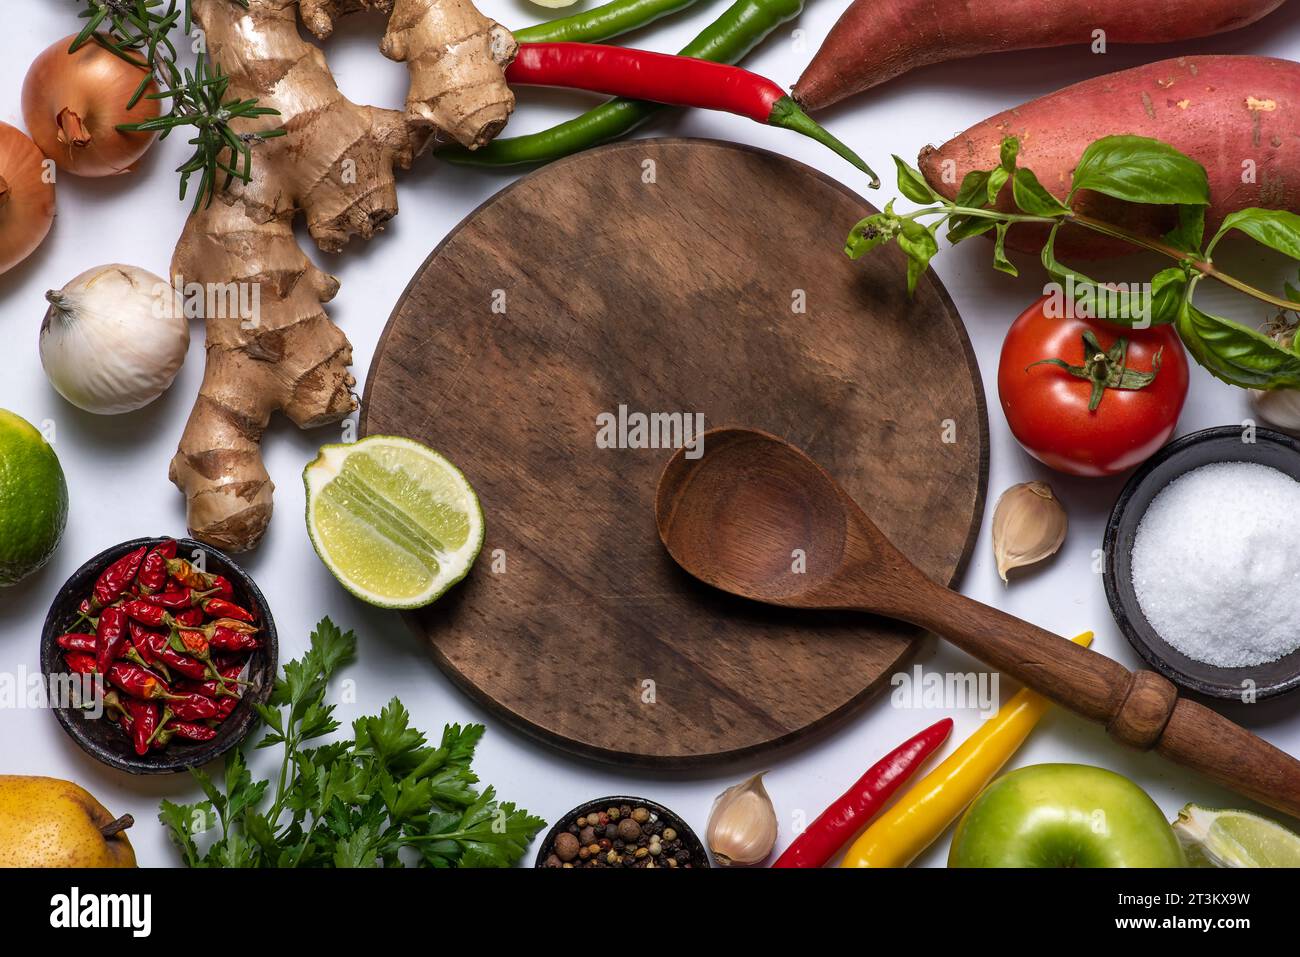 Sfondo composto da ingredienti da cucina. Tagliere in legno e cucchiaio in legno, verdure e spezie varie Foto Stock